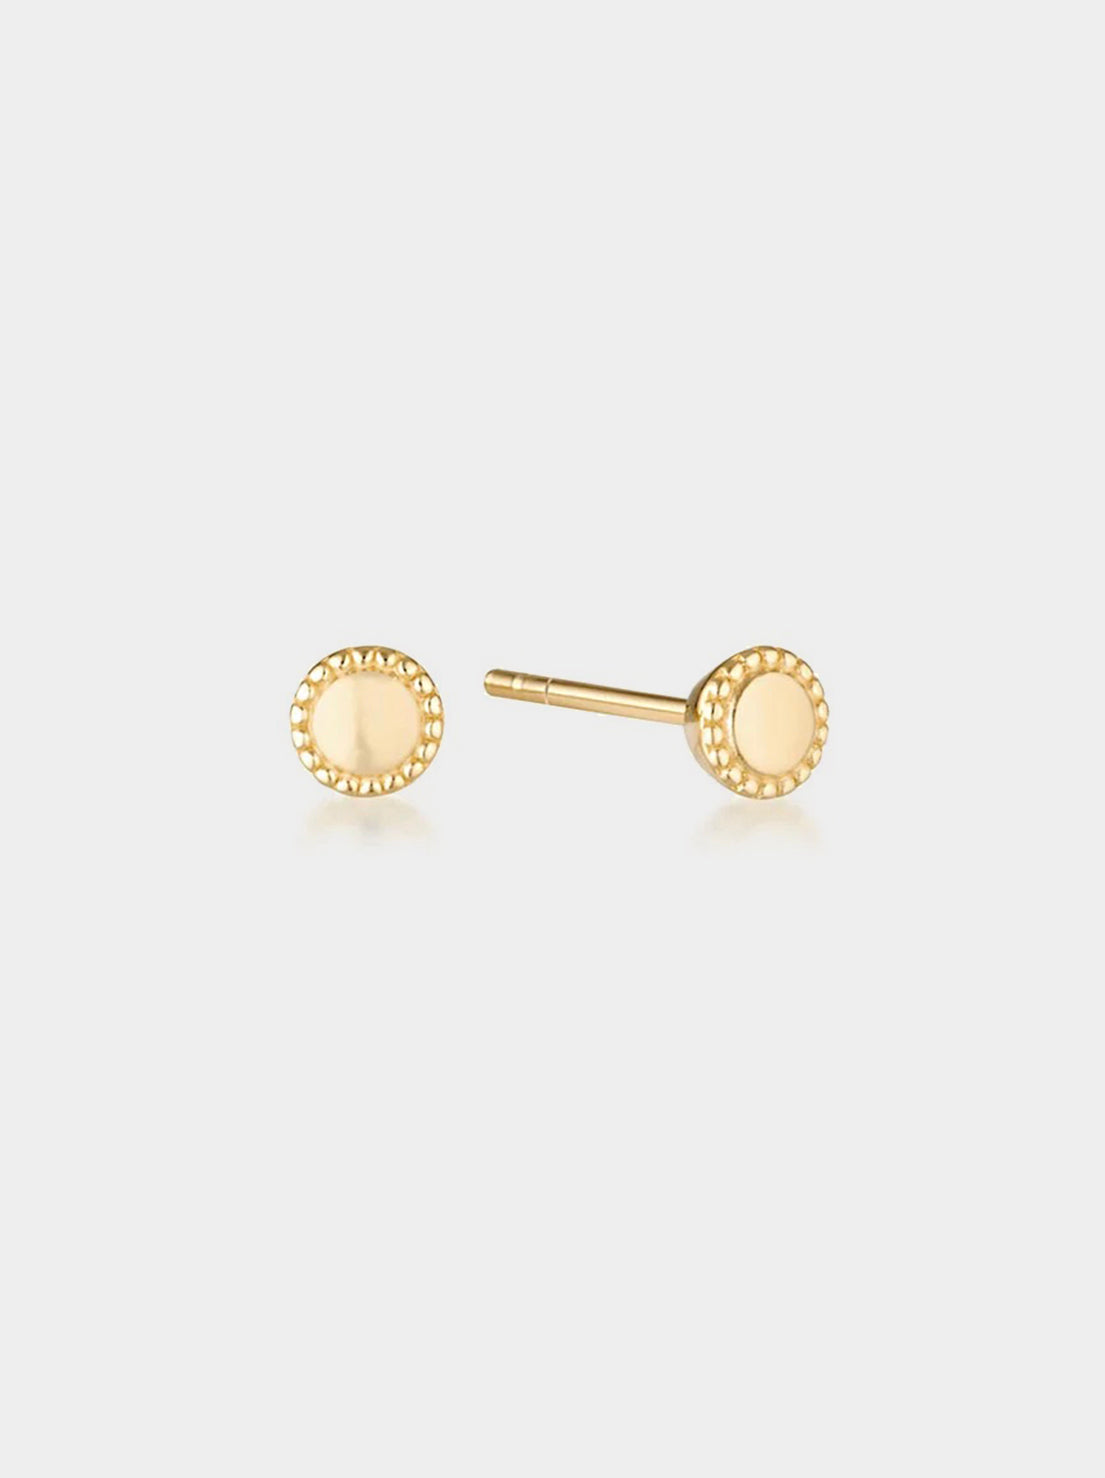 Linda Tahija - Mill Stud Earrings - Gold Plated